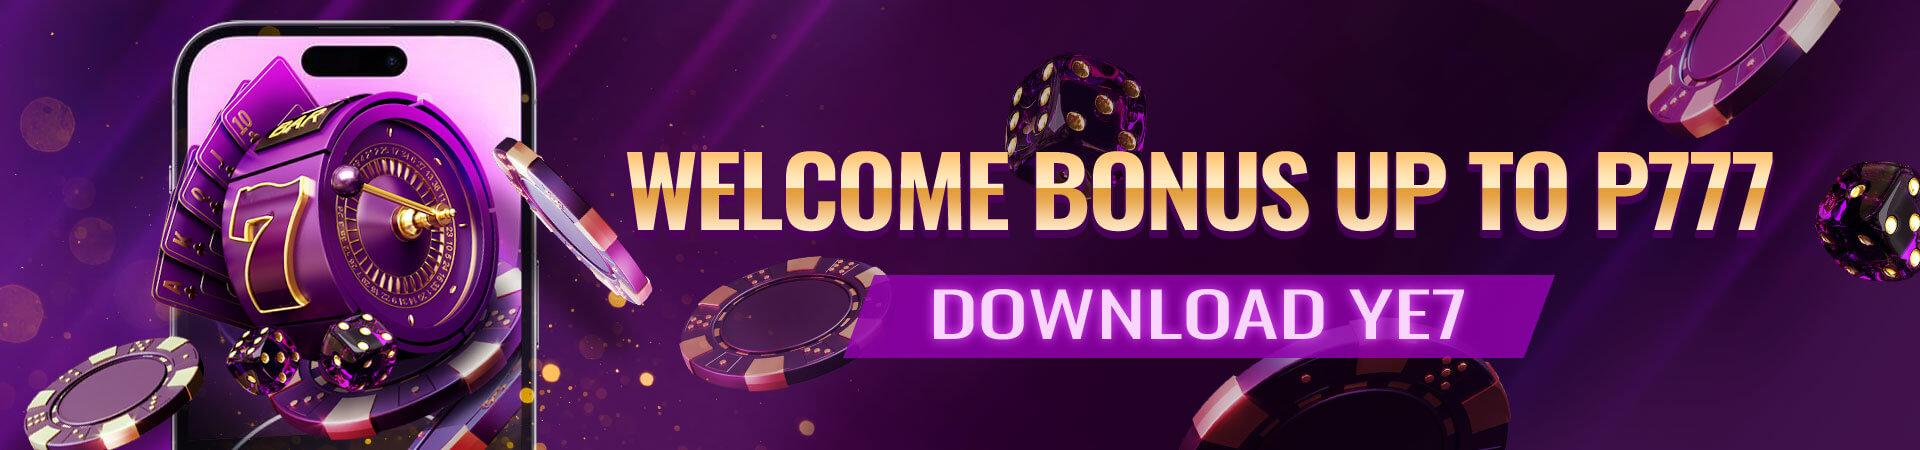 PSG-Welcome-Bonus.jpg